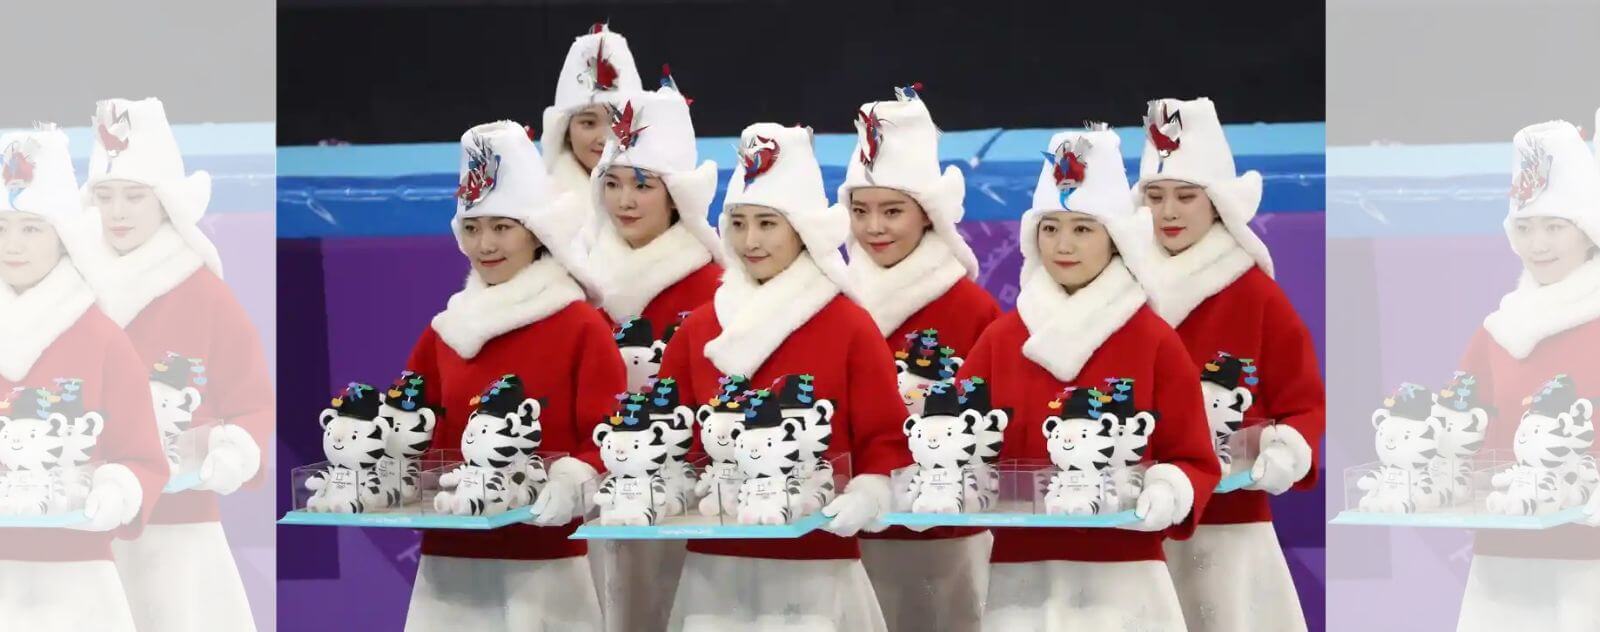 Femmes avec des Manteaux Rouges et des Plateaux de Peluches en forme de Mascotte Olympique Officielle